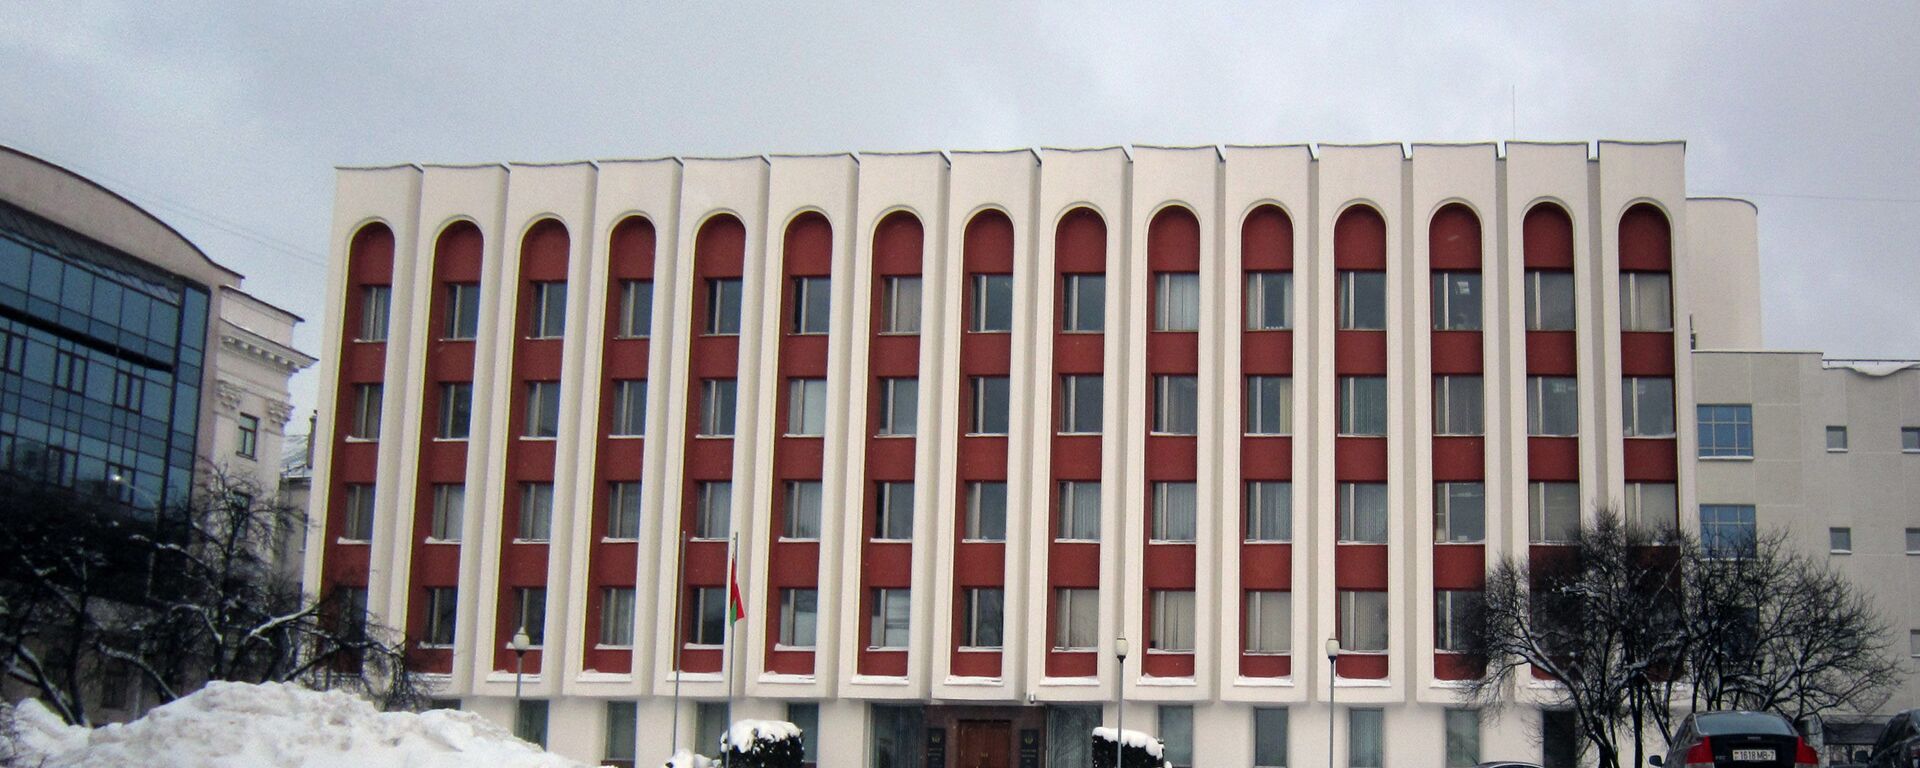 Здание министерства иностранных дел Республики Белоруссии - Sputnik Lietuva, 1920, 27.02.2021